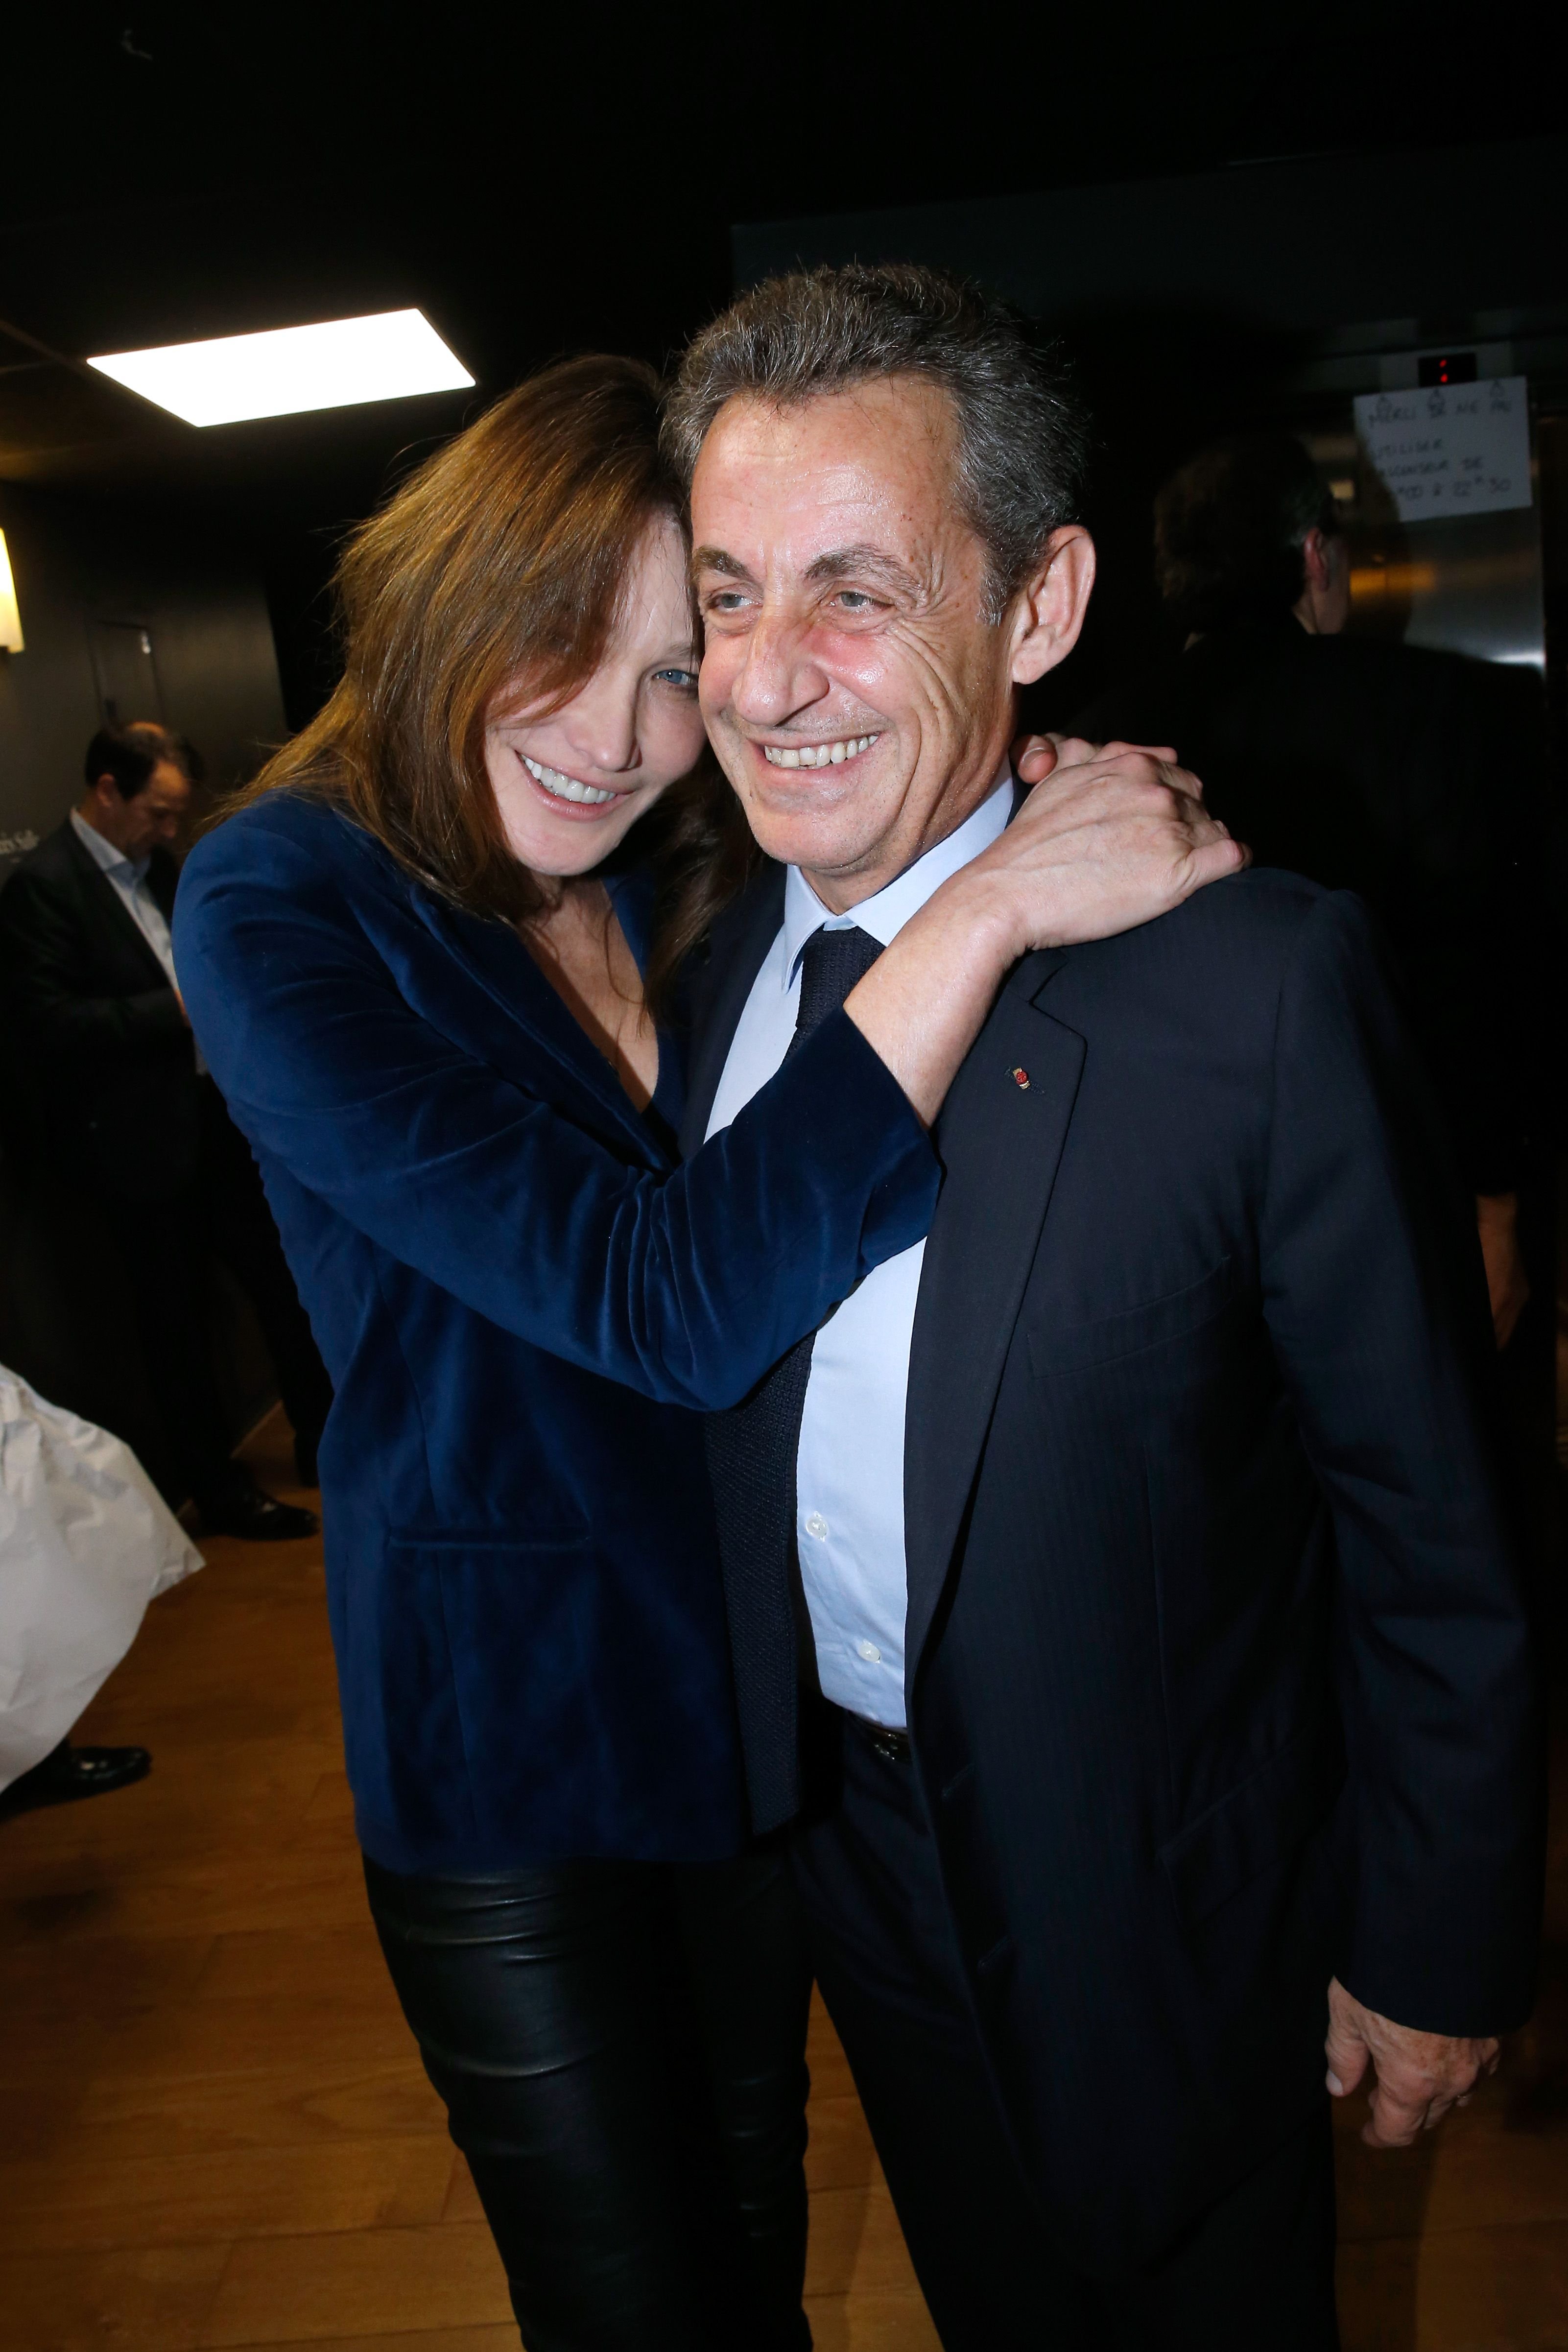 Nicolas Sarkozy et son épouse Carla Bruni Sarkozy à la Salle Pleyel le 30 janvier 2017 à Paris, France. | Photo : Getty Images